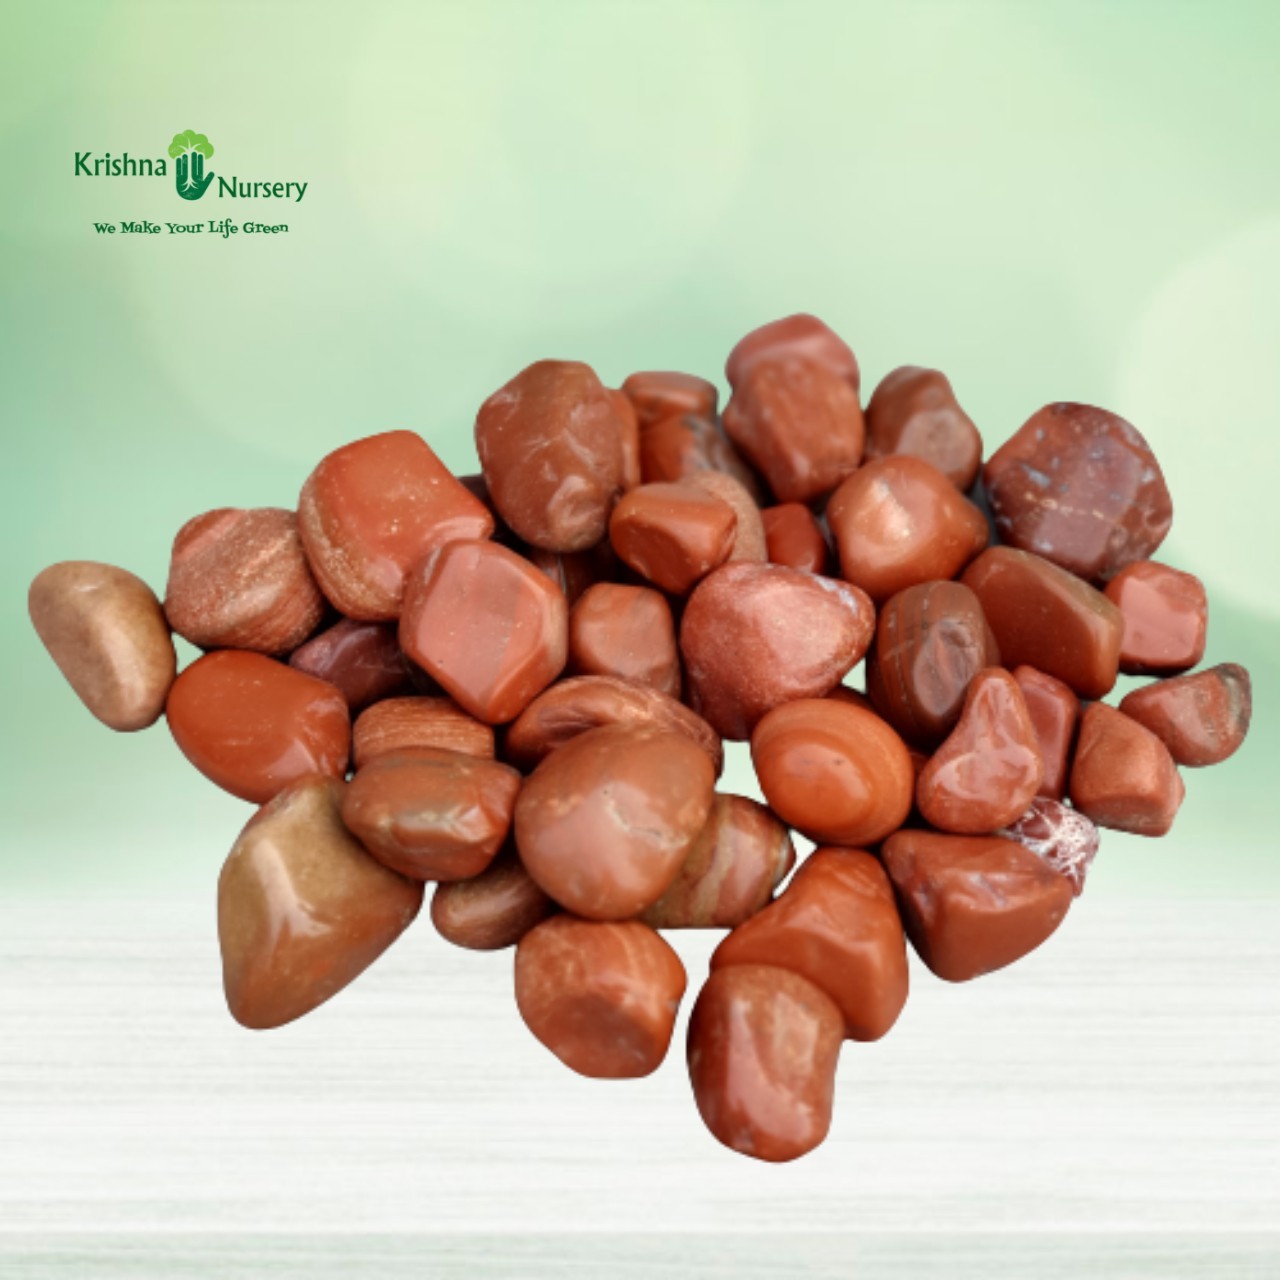 Polished Jasper Pebbles (Color: Red, Size: Medium) - Pebbles -  - polished-jasper-pebbles-color-red-size-medium -   